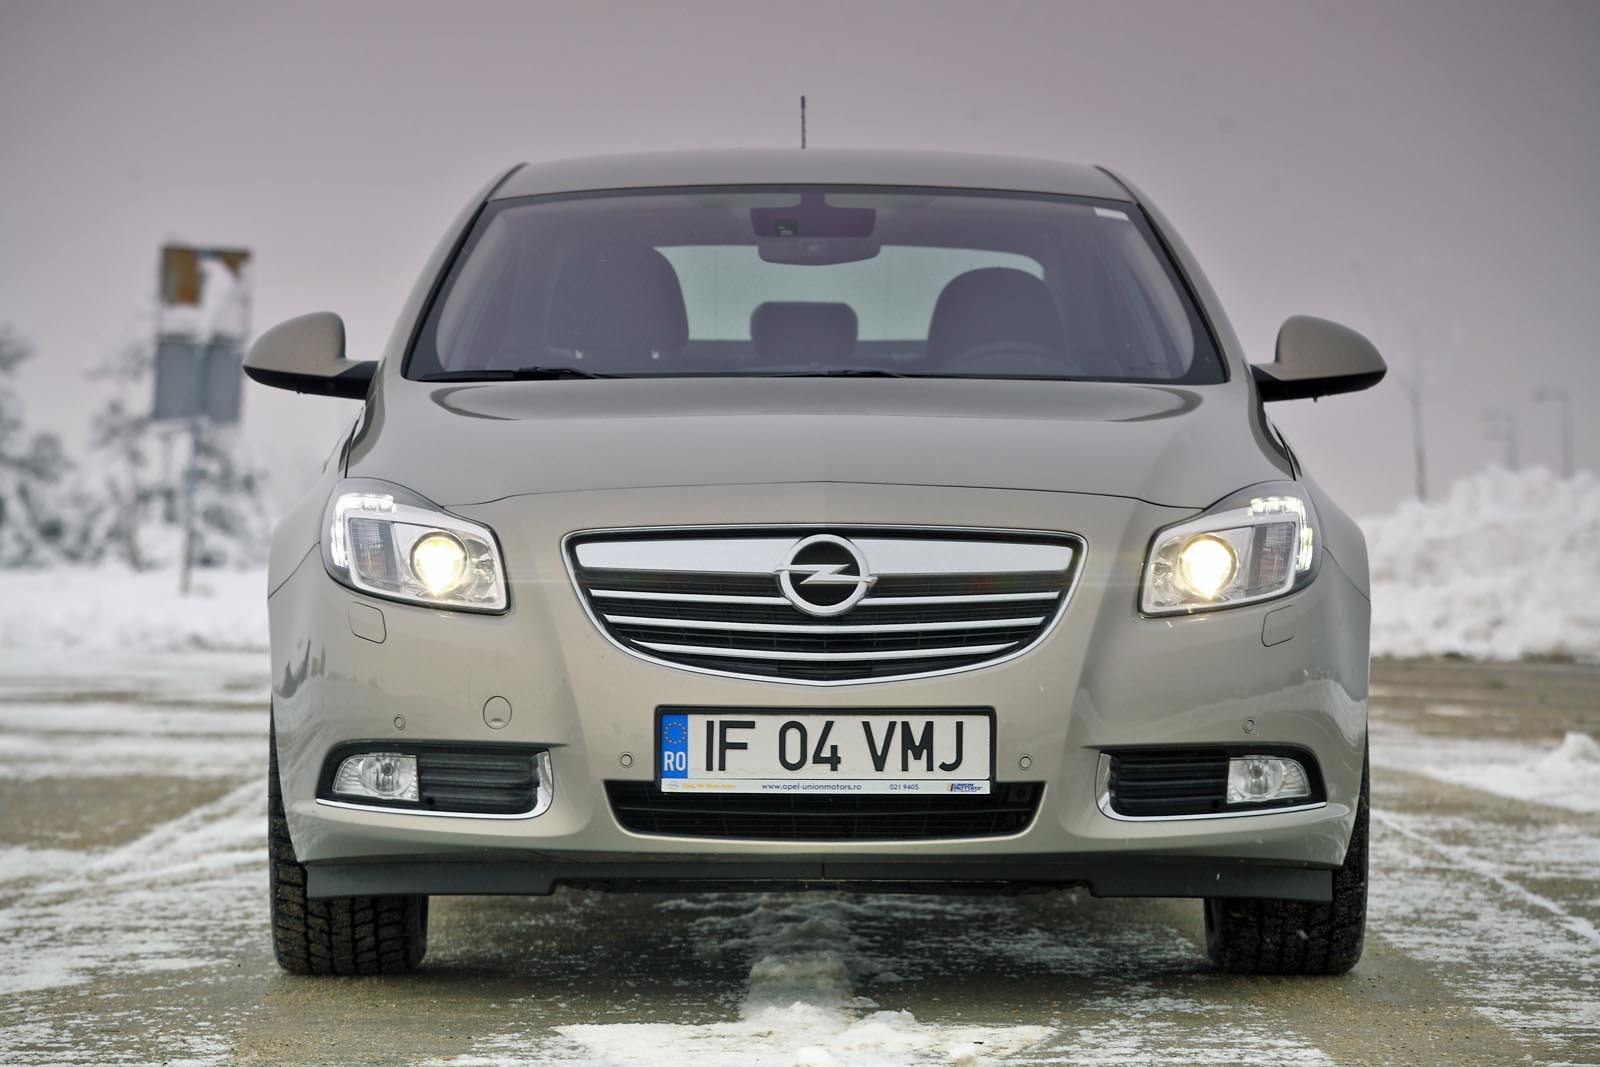 Opel Insignia 2.0 CDTi 160 CP, in echipare de baza Edition, porneste de la 26.515 euro